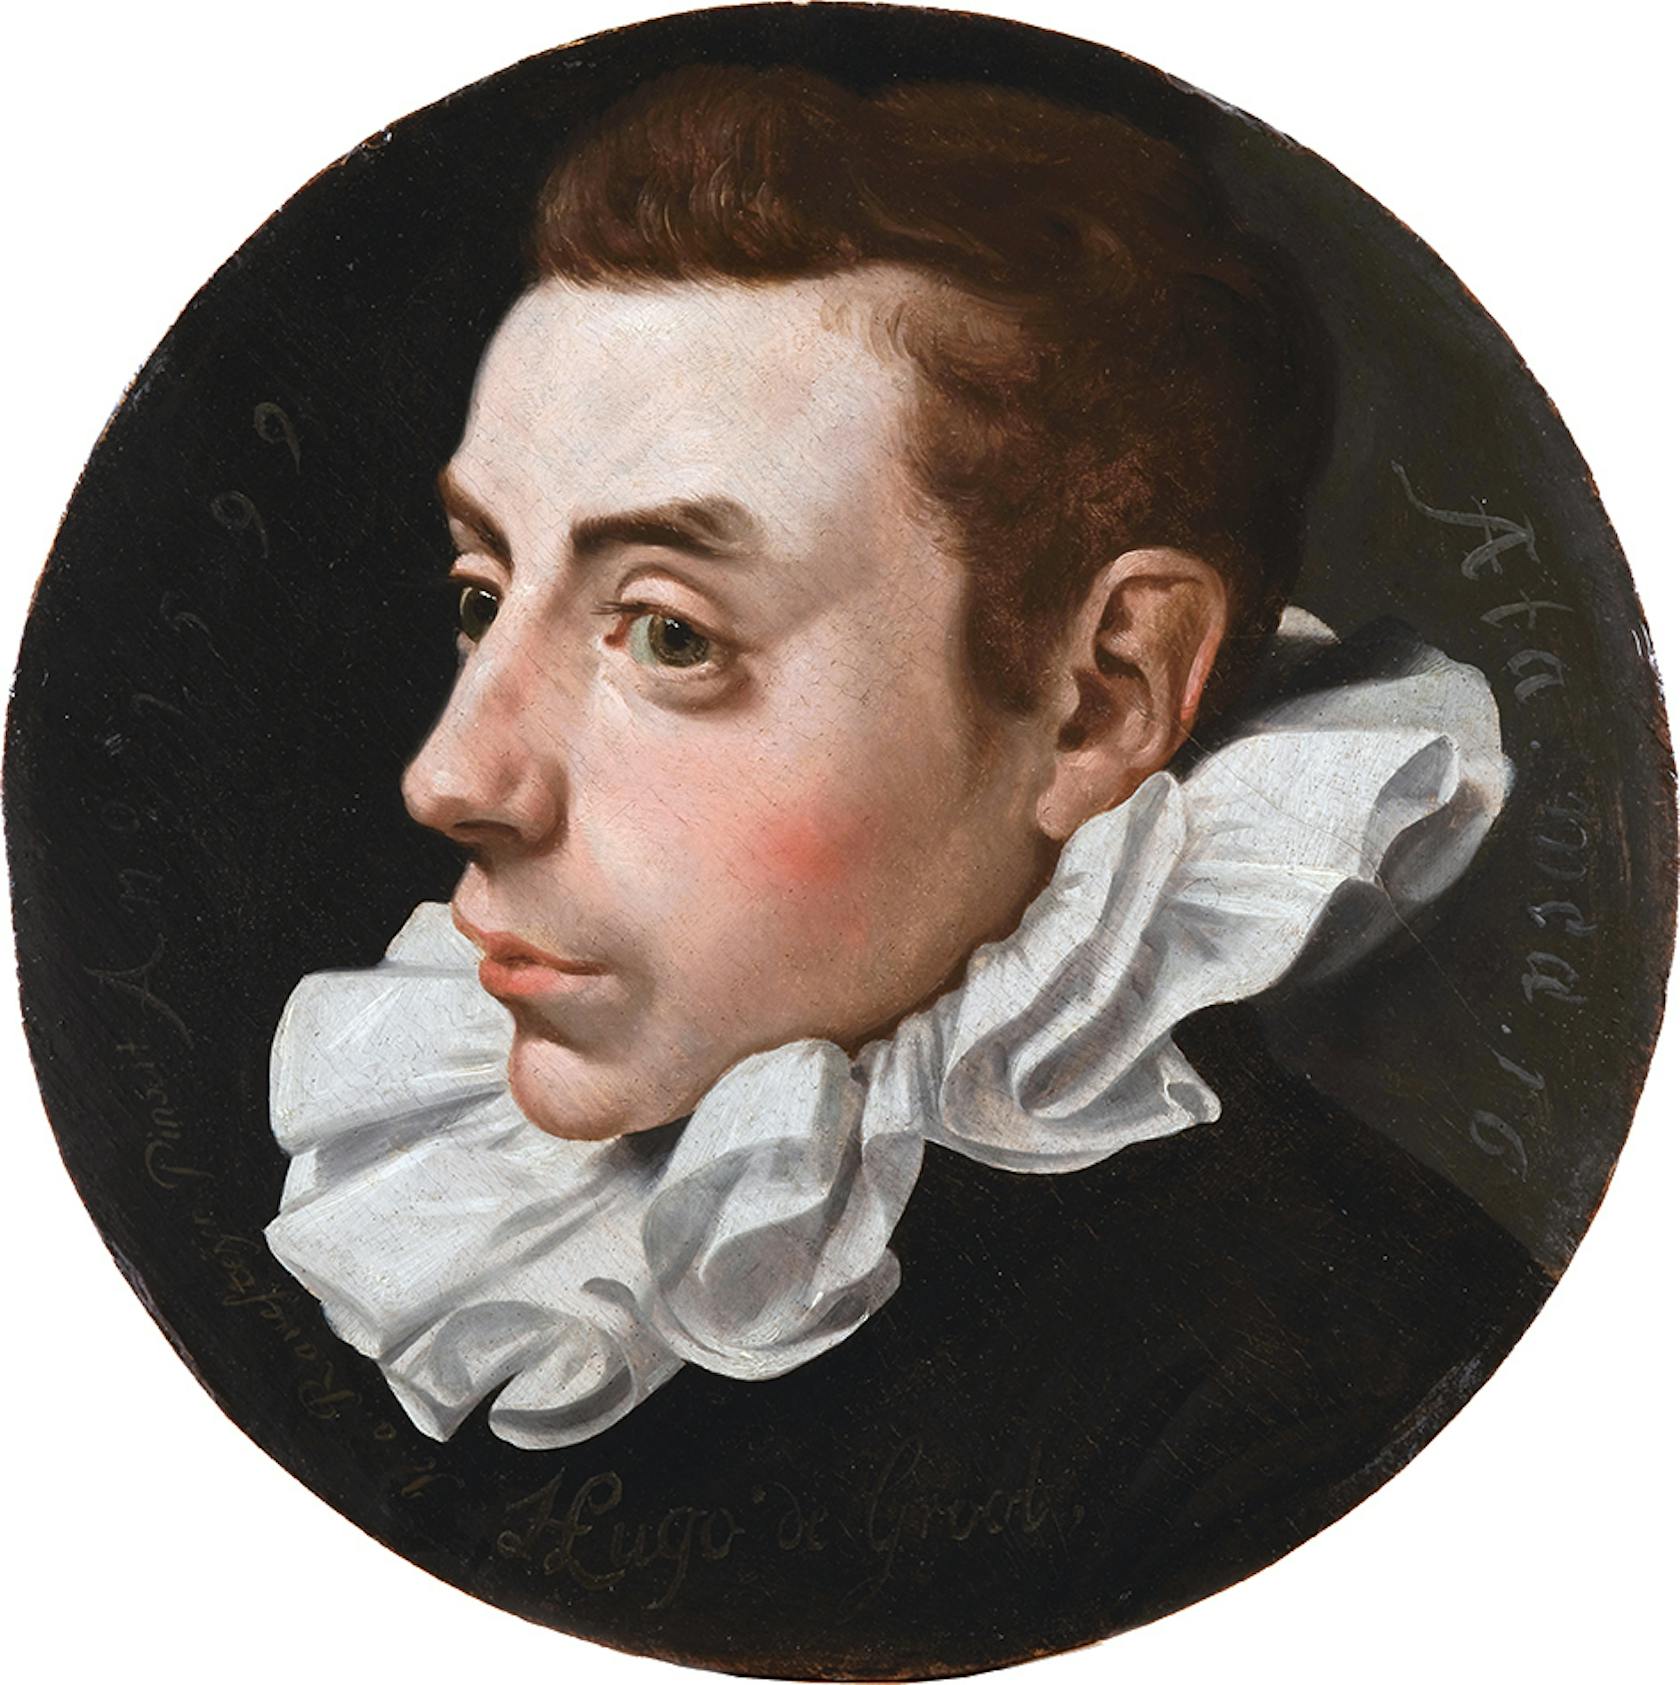 Hugo de Groot op 16-jarige leeftijd (1599) geschilderd door Jan Antonisz van Ravesteyn.